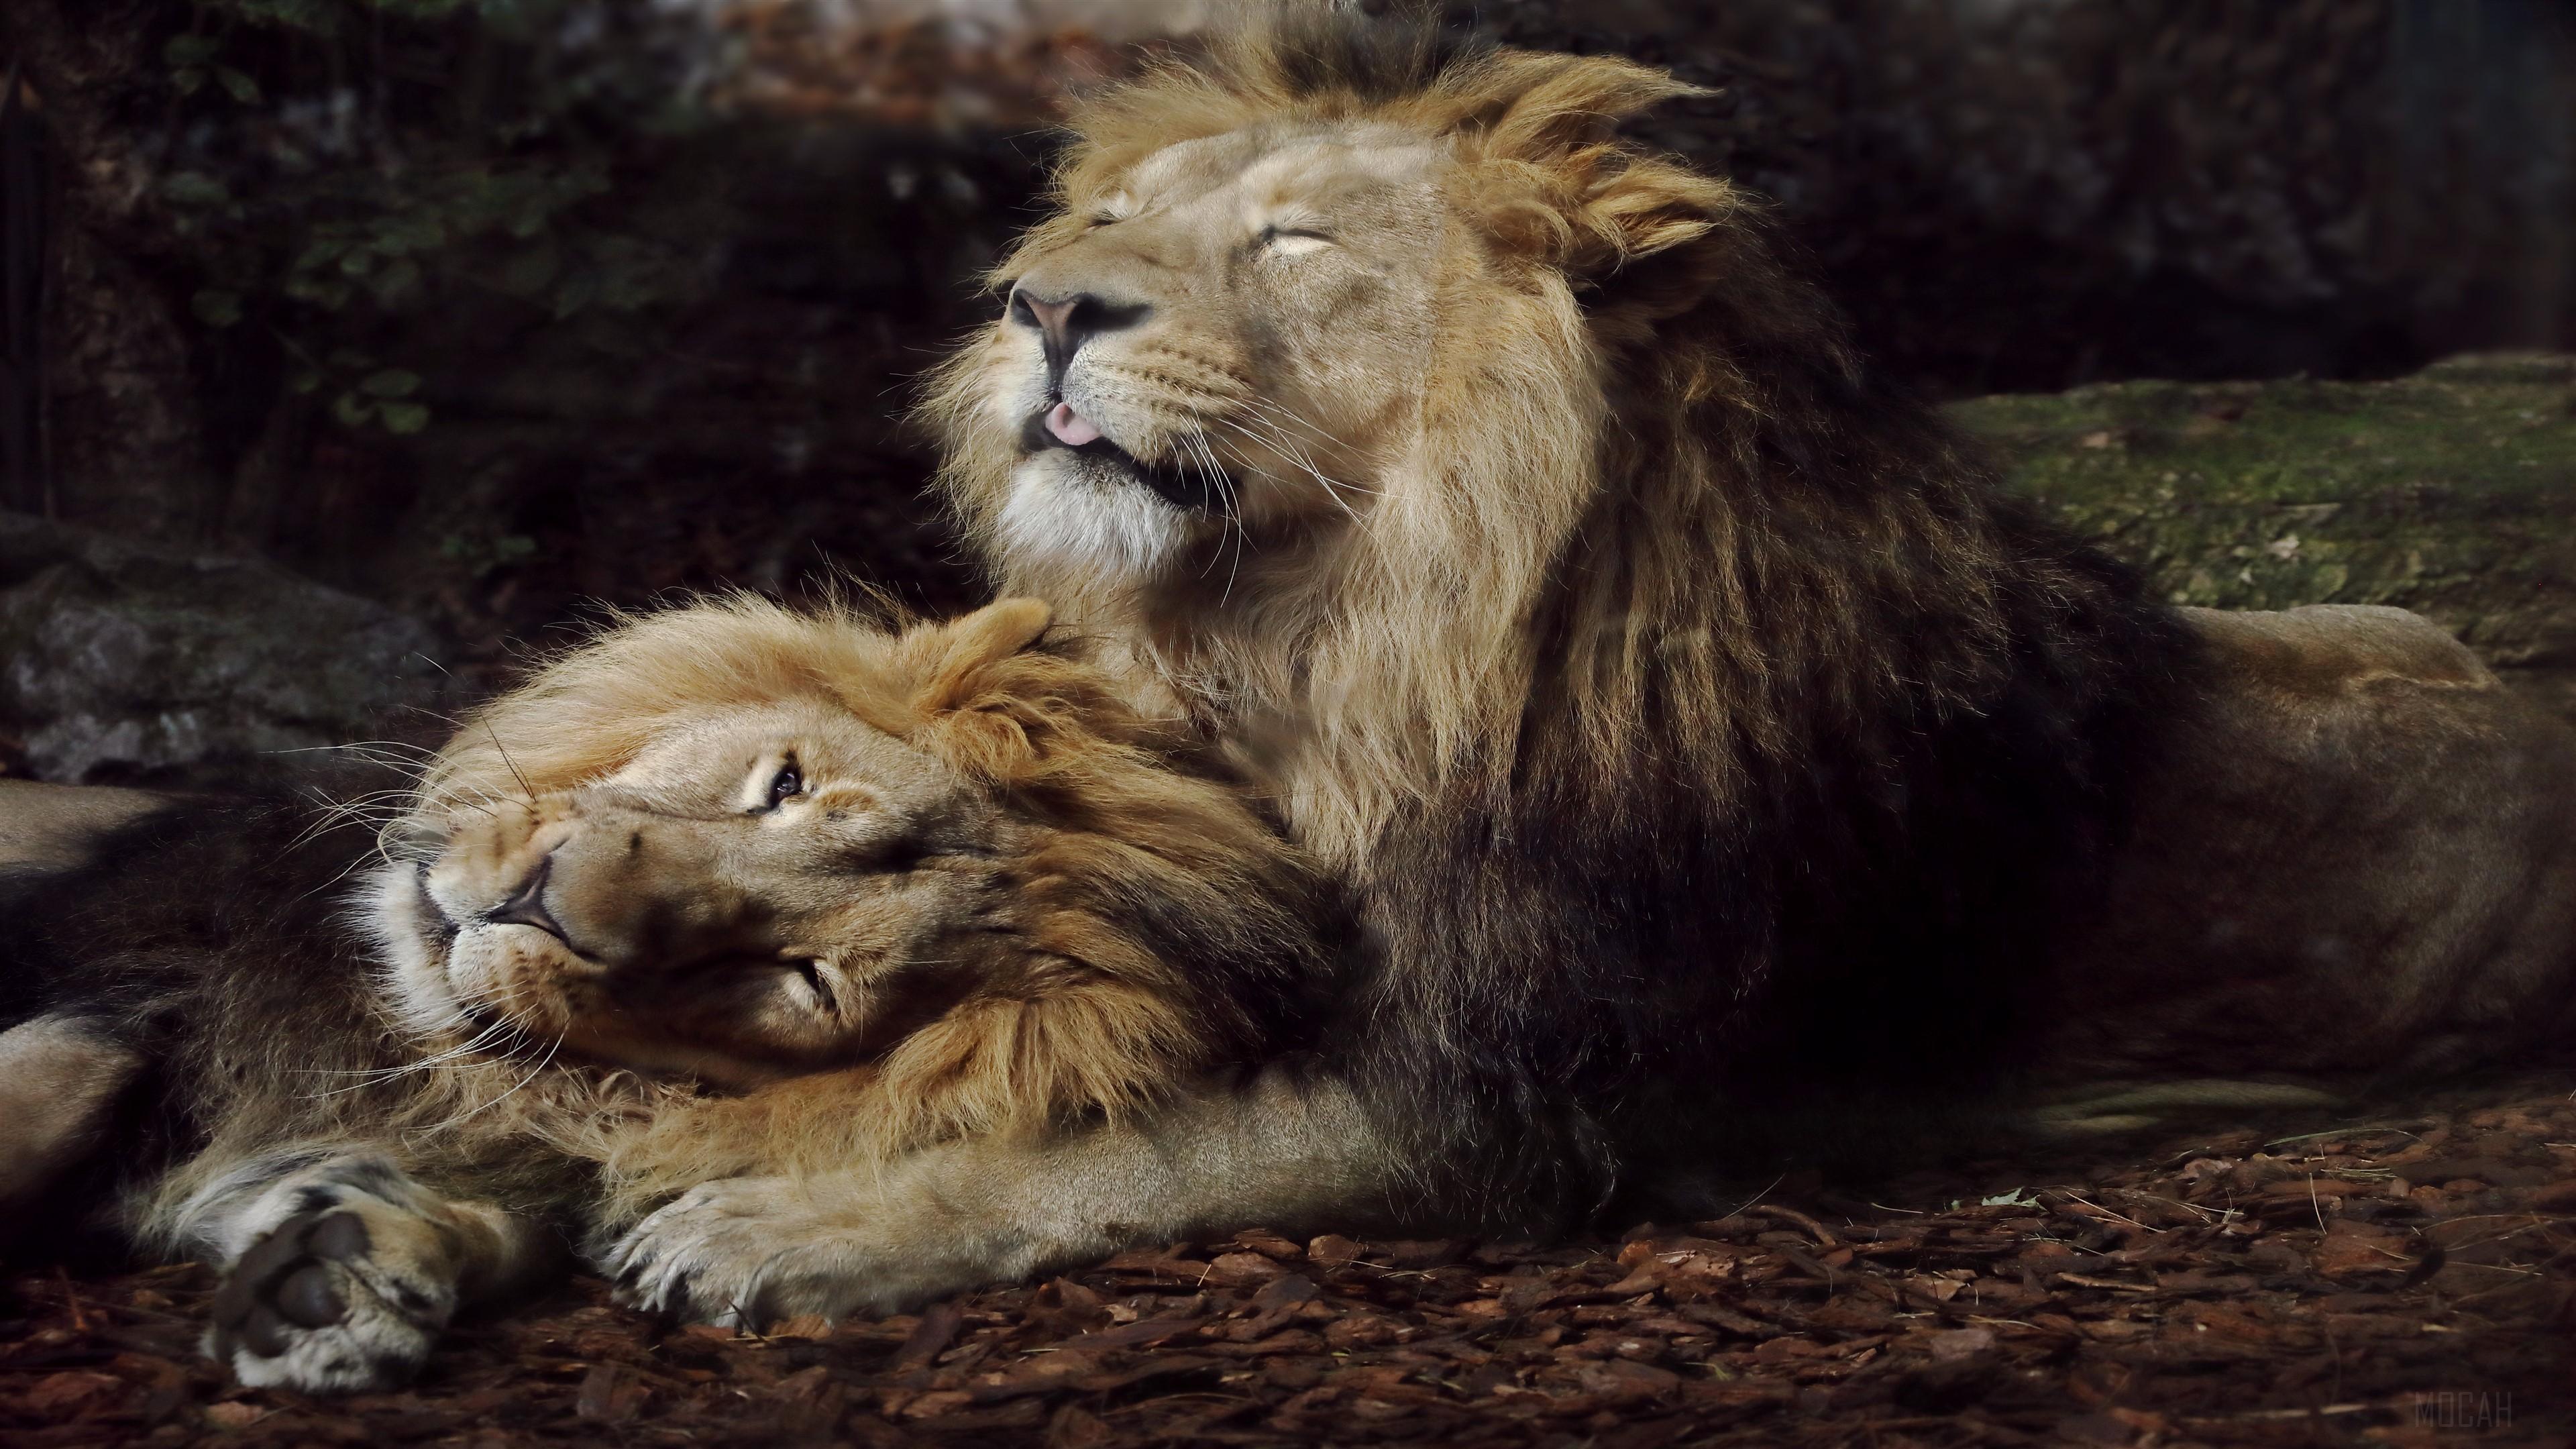 HD wallpaper, Joyful Lions 4K